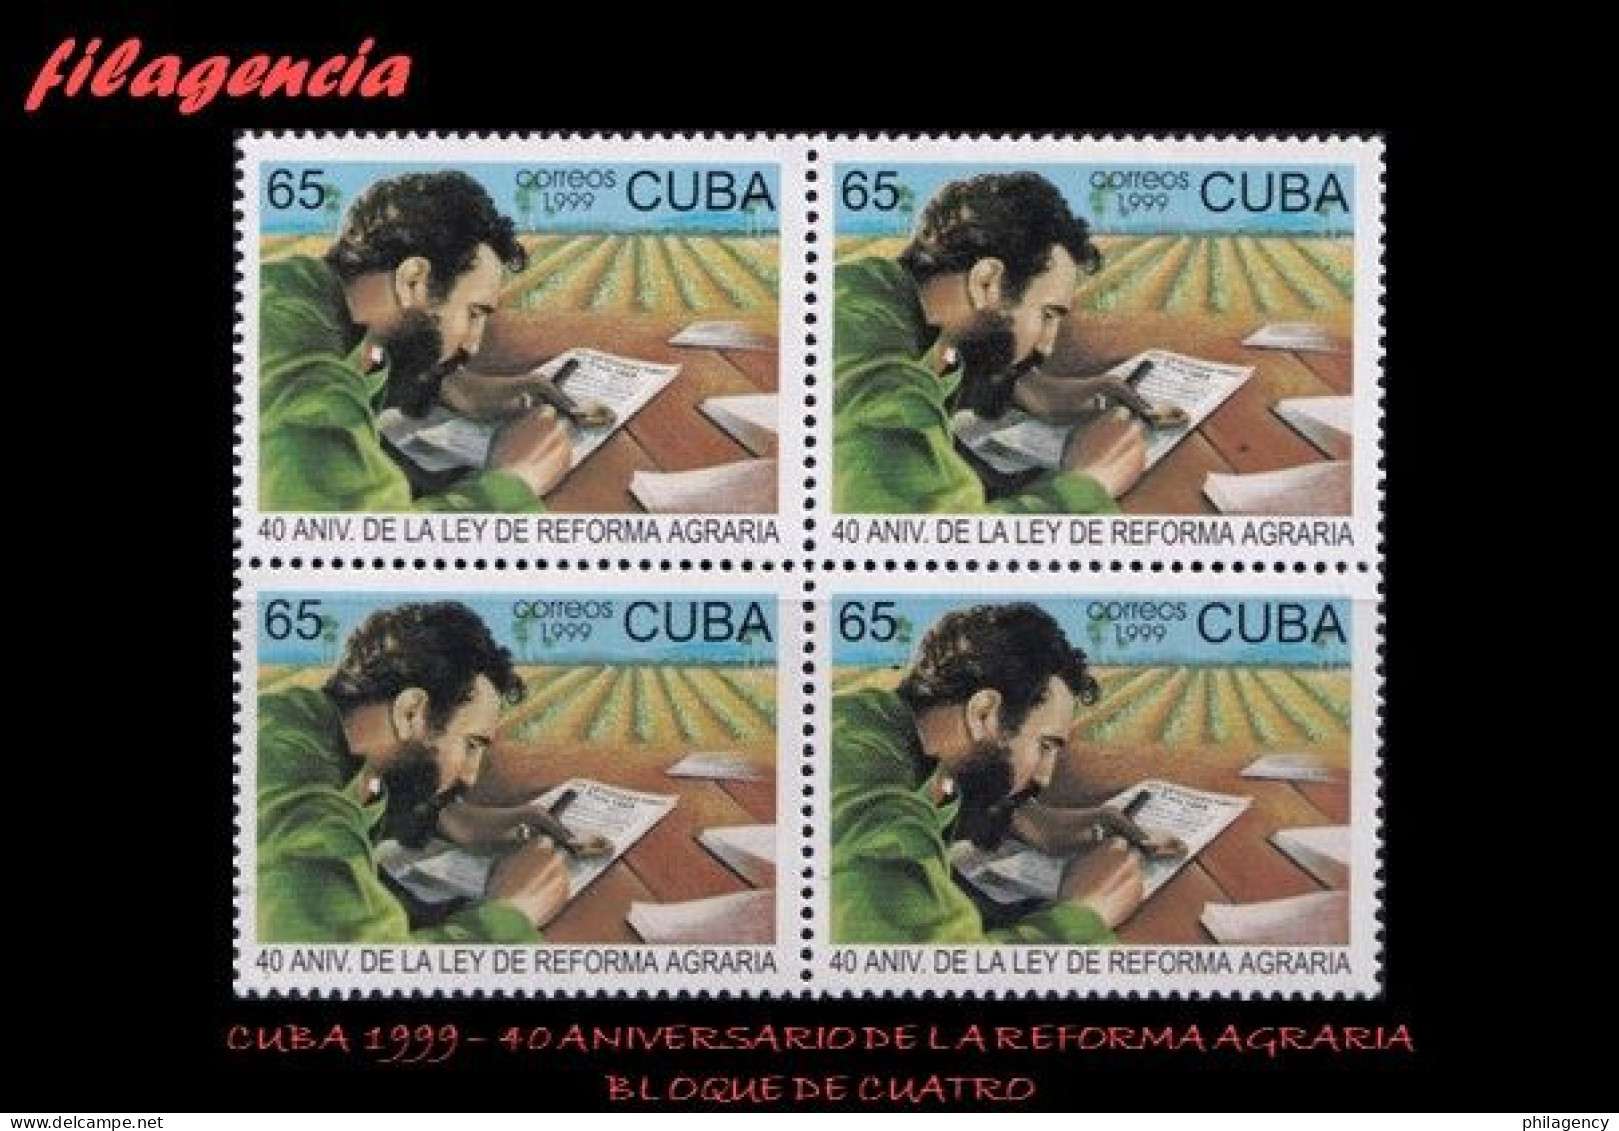 CUBA. BLOQUES DE CUATRO. 1999-14 40 ANIVERSARIO DE LA LEY DE REFORMA AGRARIA - Nuovi